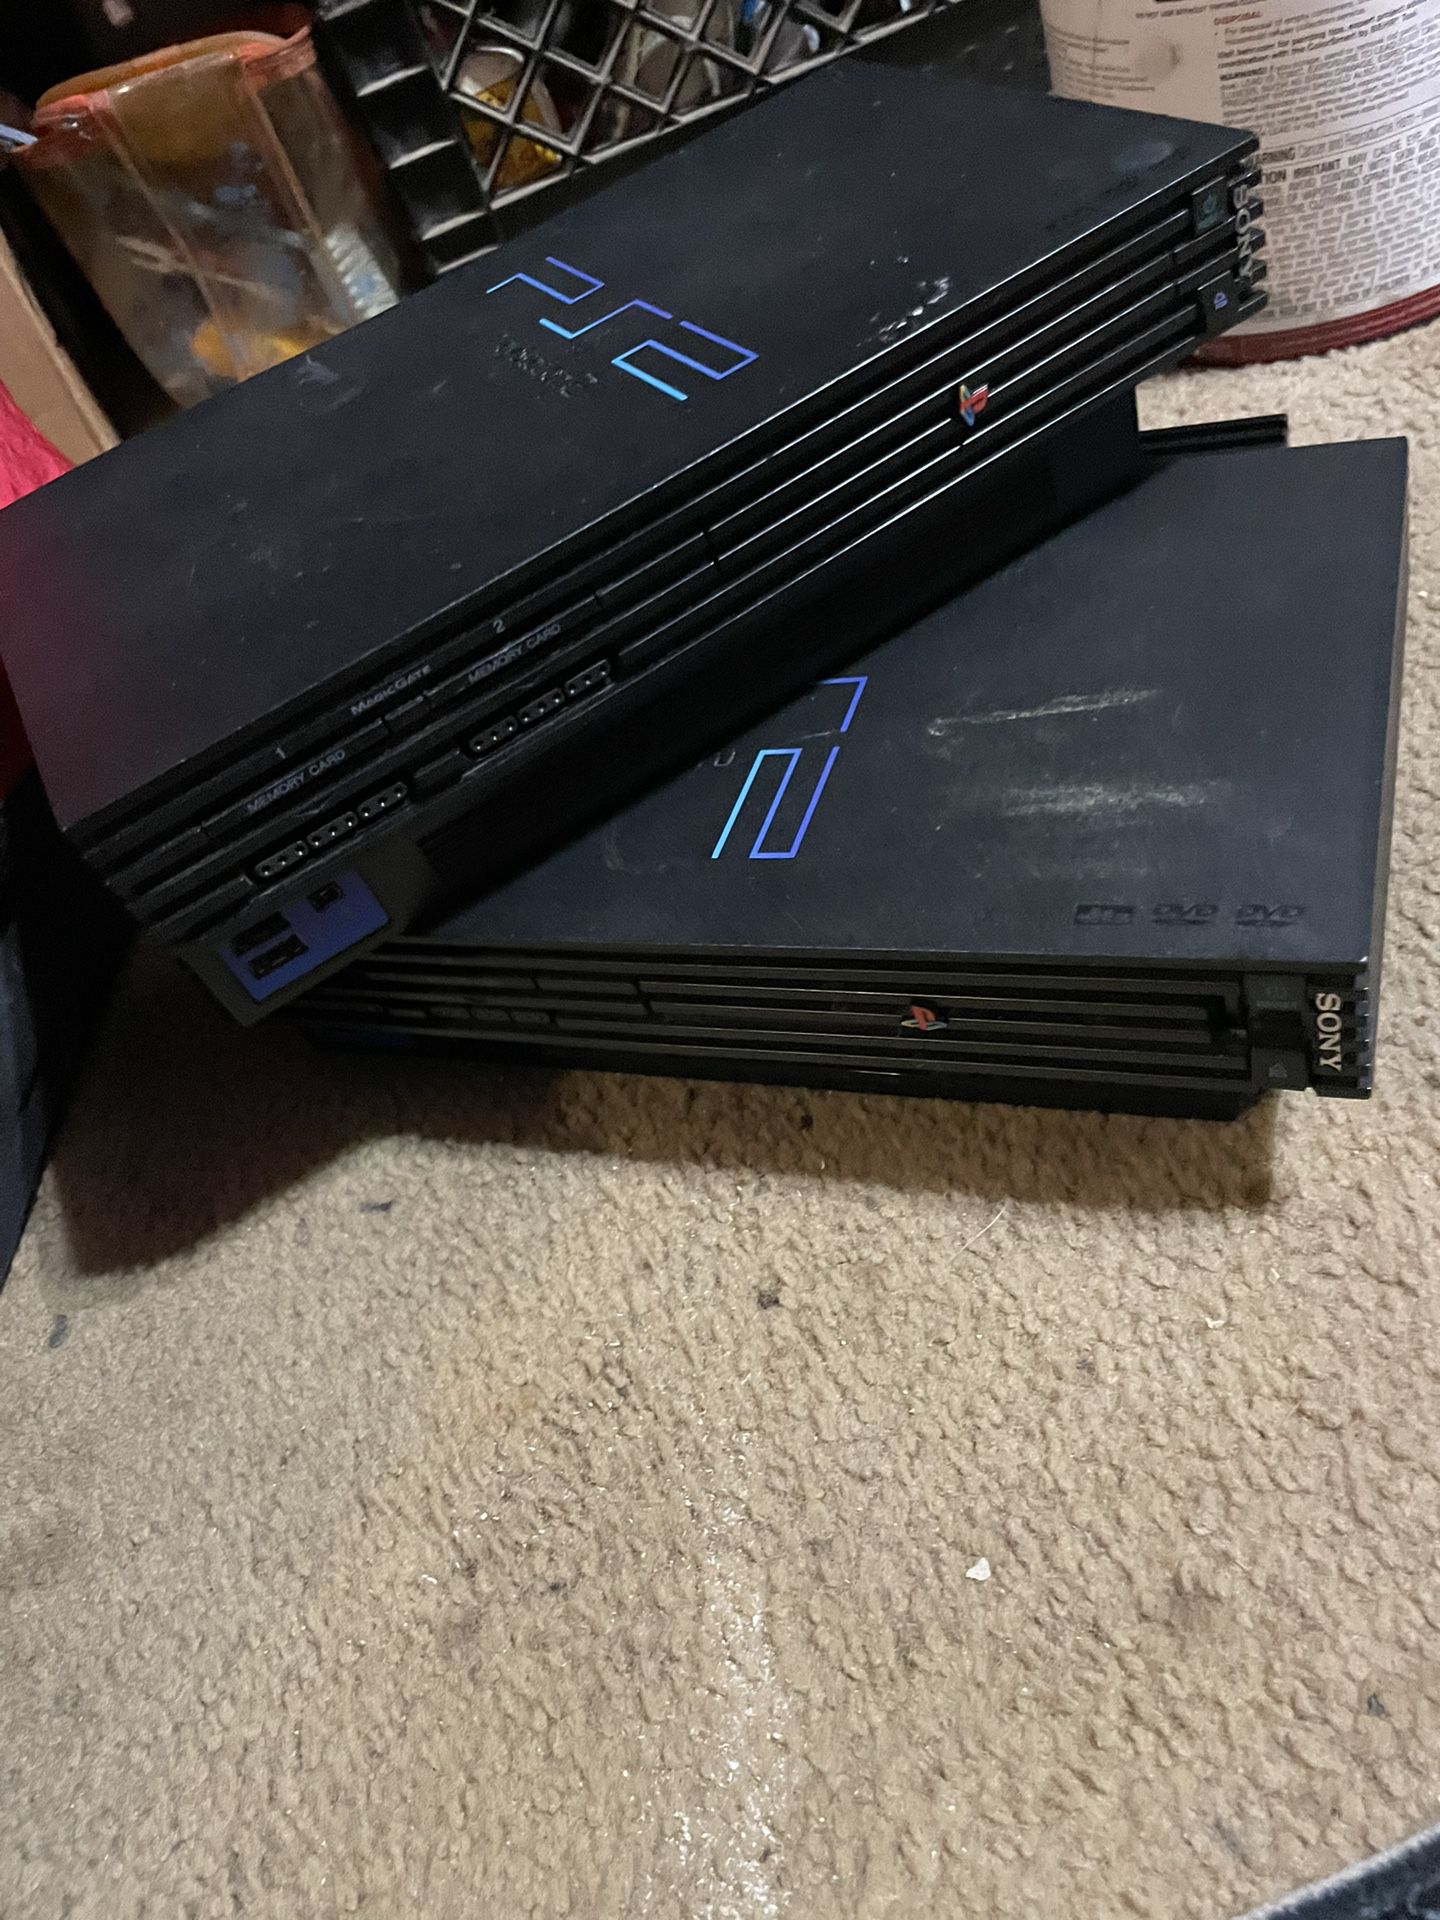 2 Ps2 Consoles